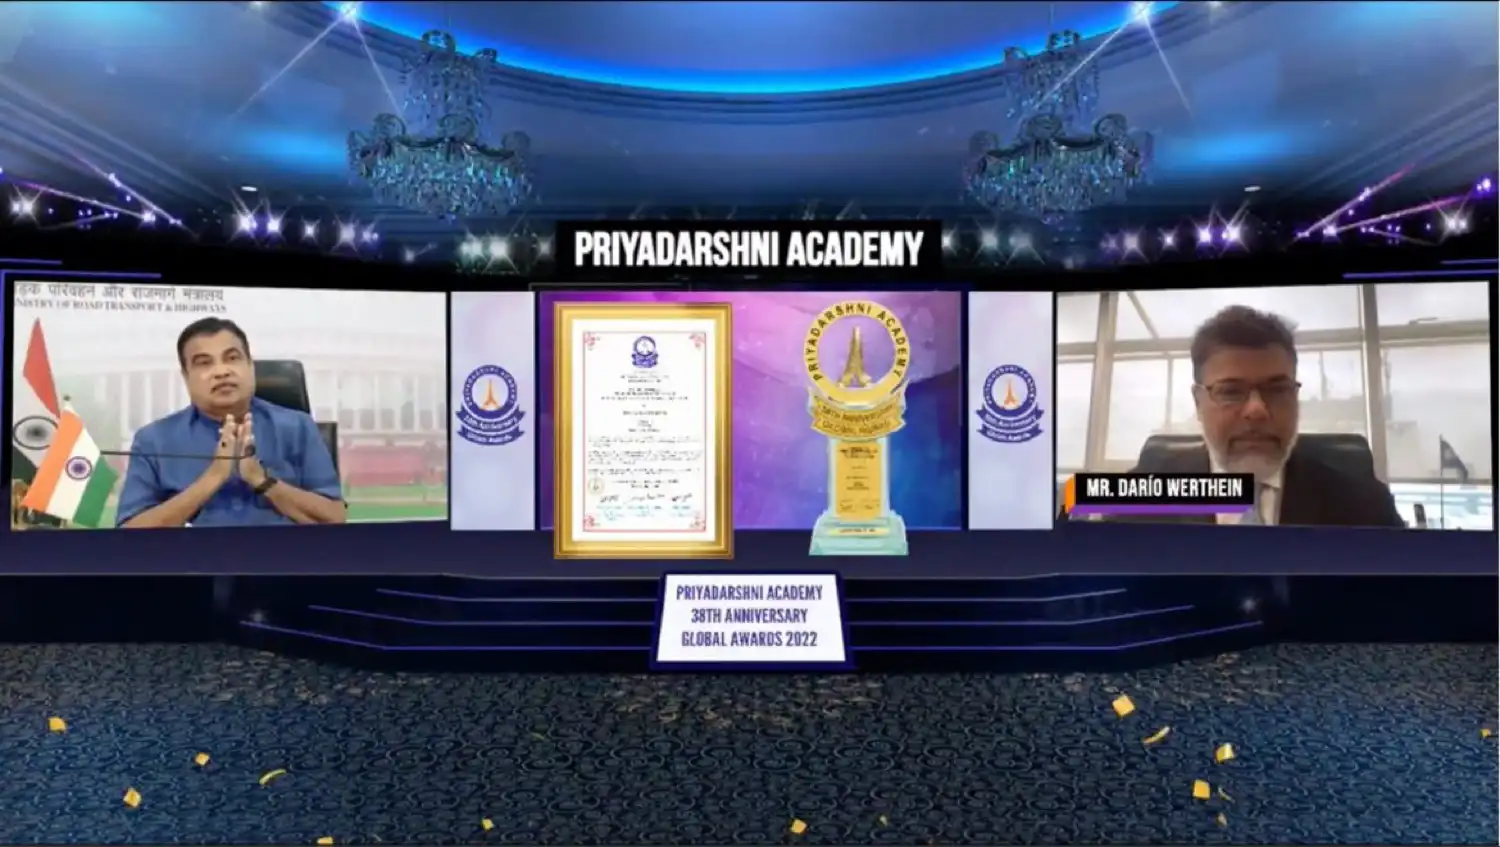 Presidente de Vrio Crop es galardonado por la Academia Priyadarshni